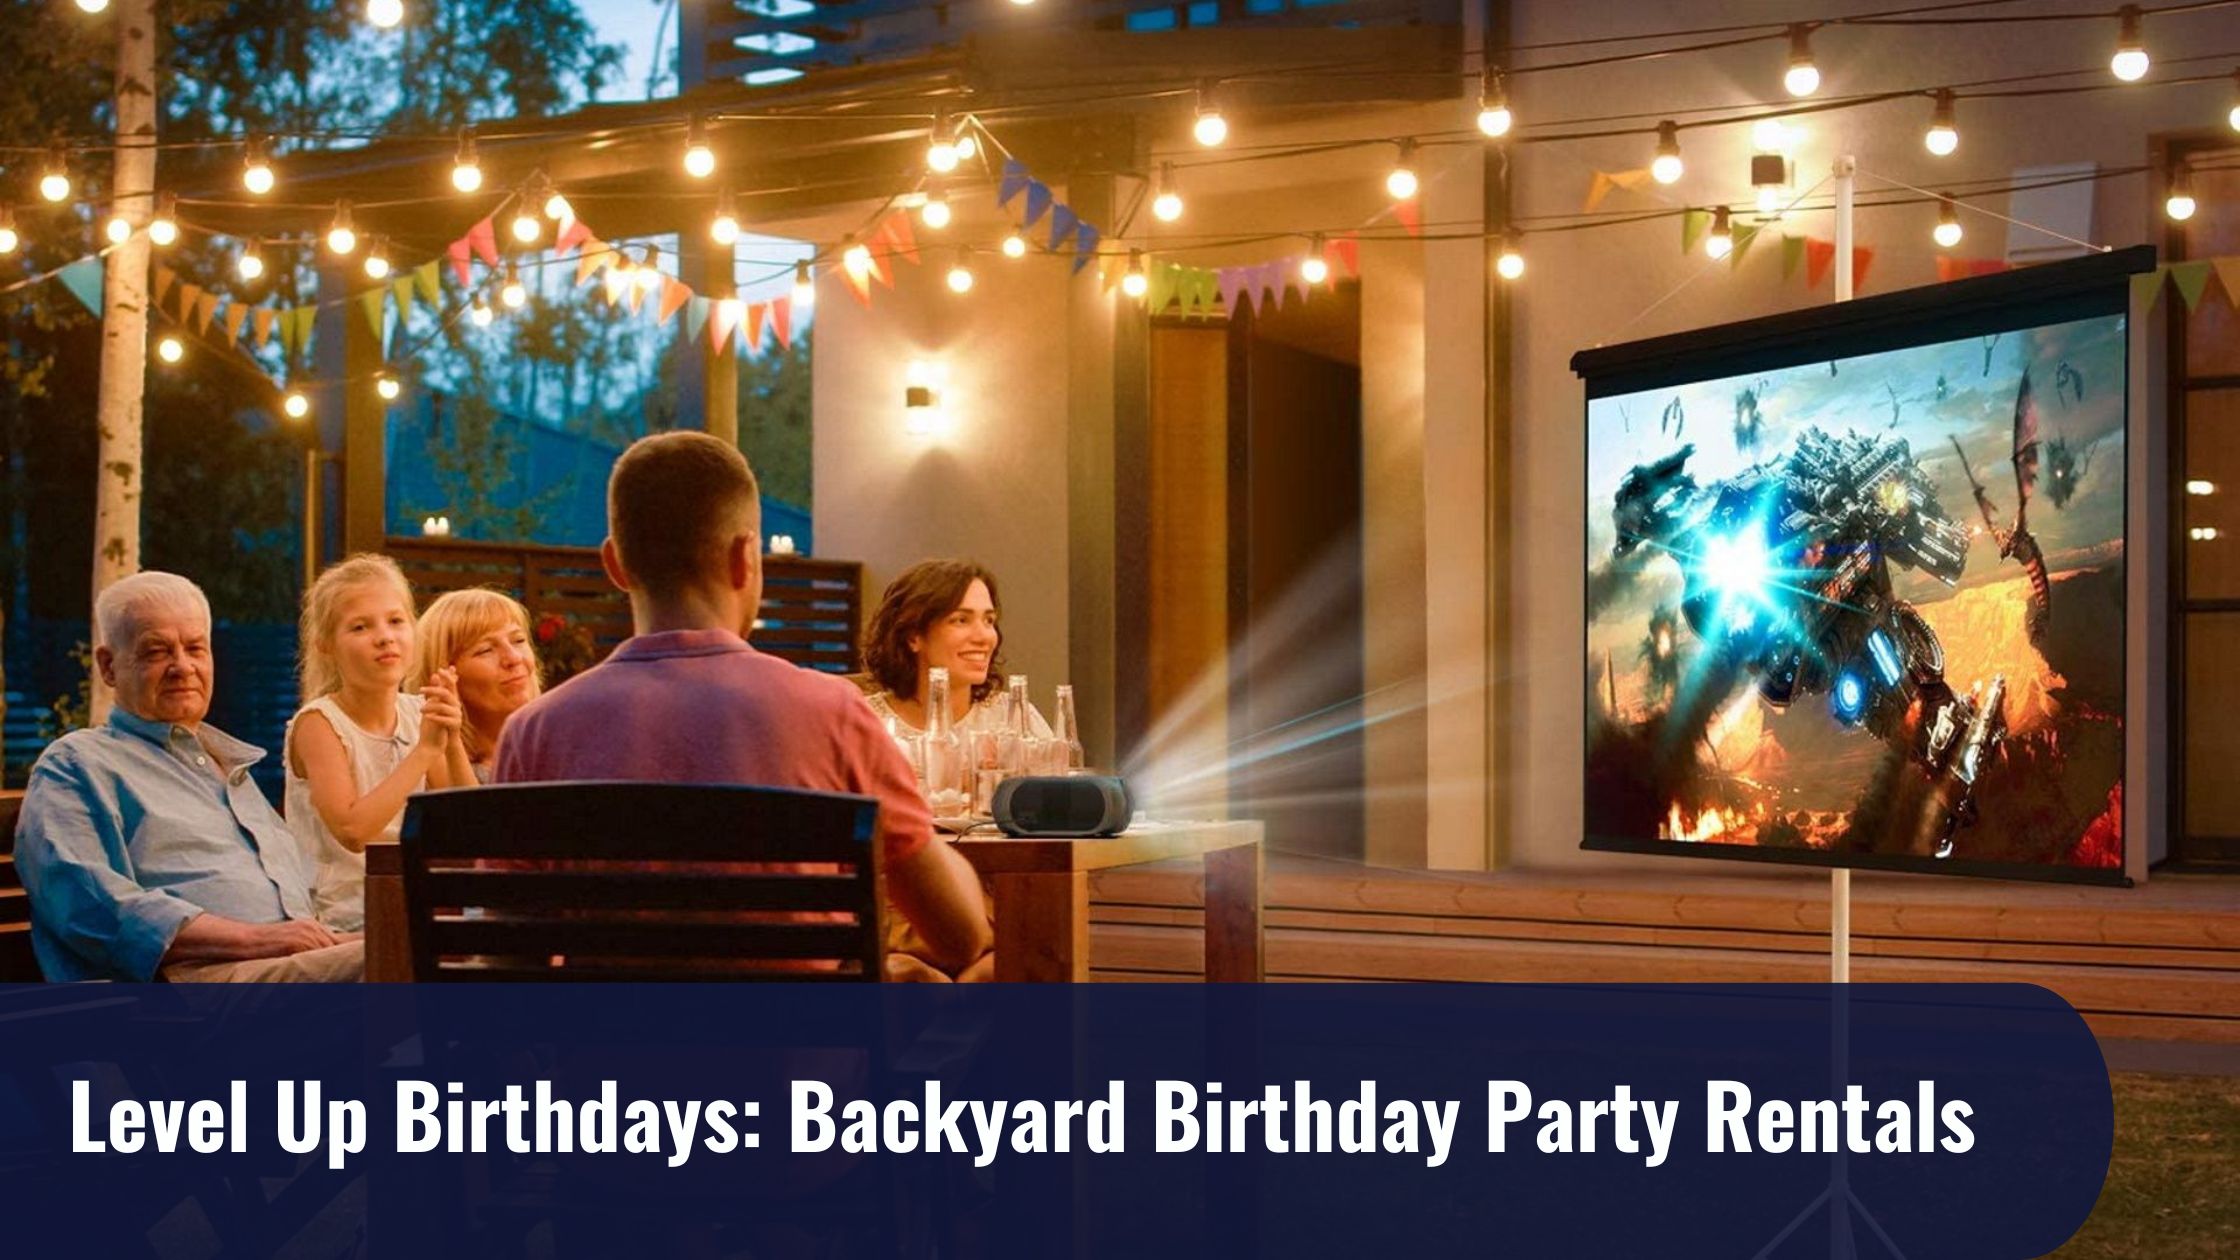 Level Up Birthdays: Backyard Birthday Party Rentals